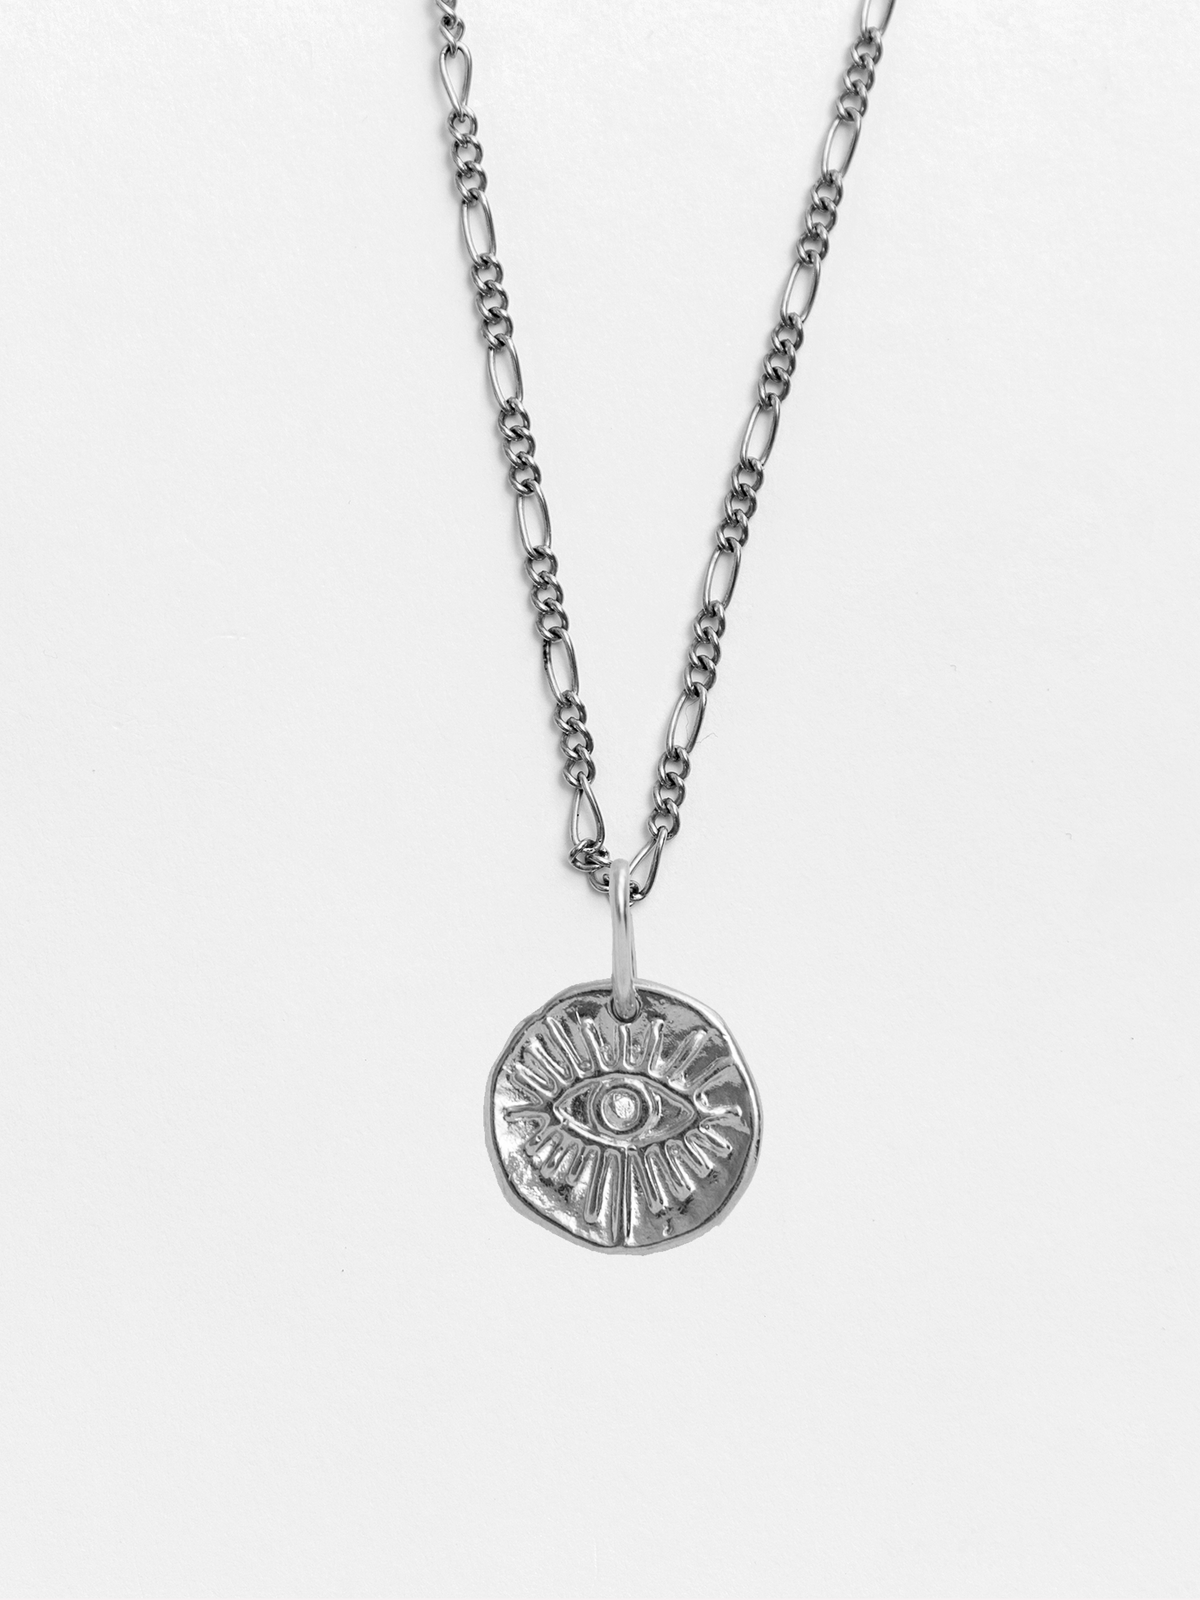 Mati Small Silver Pendant Necklace